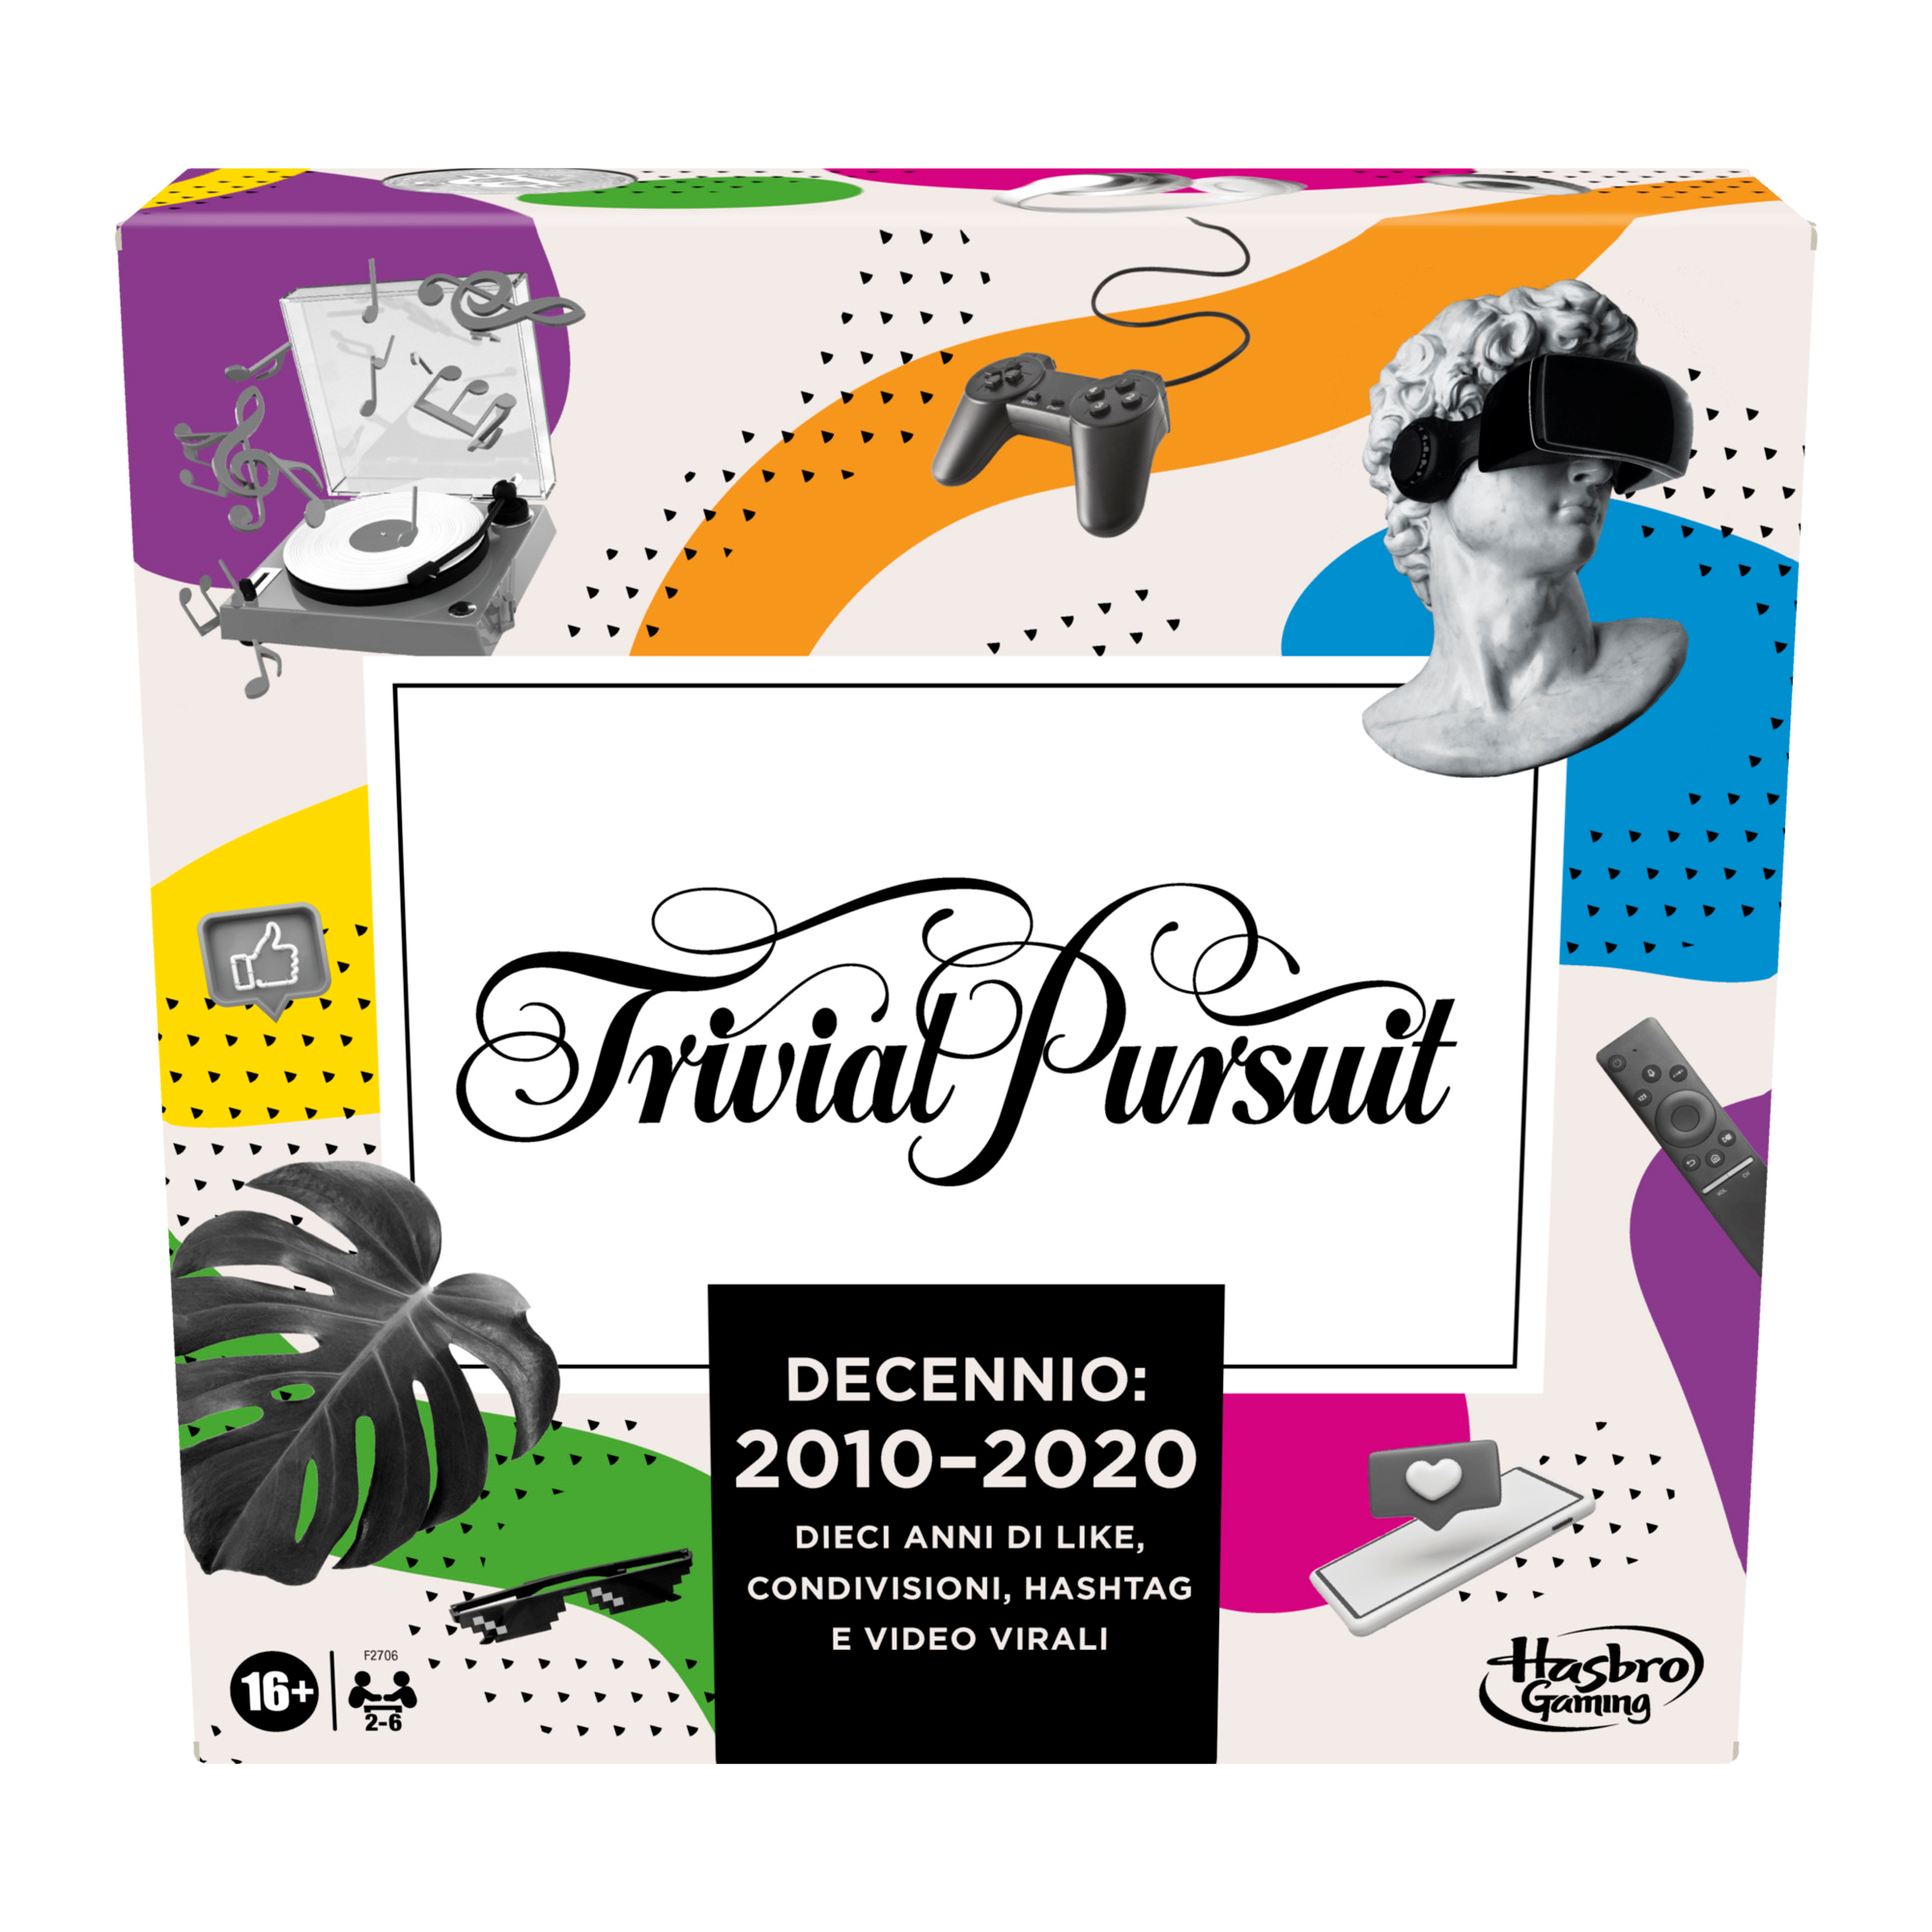 Hasbro trivial pursuit decennio: 2010 - 2020, gioco da tavolo per adulti e adolescenti, gioco di domande e risposte su cultura popolare da 2 a 6 giocatori, dai 16 anni in su - HASBRO GAMING